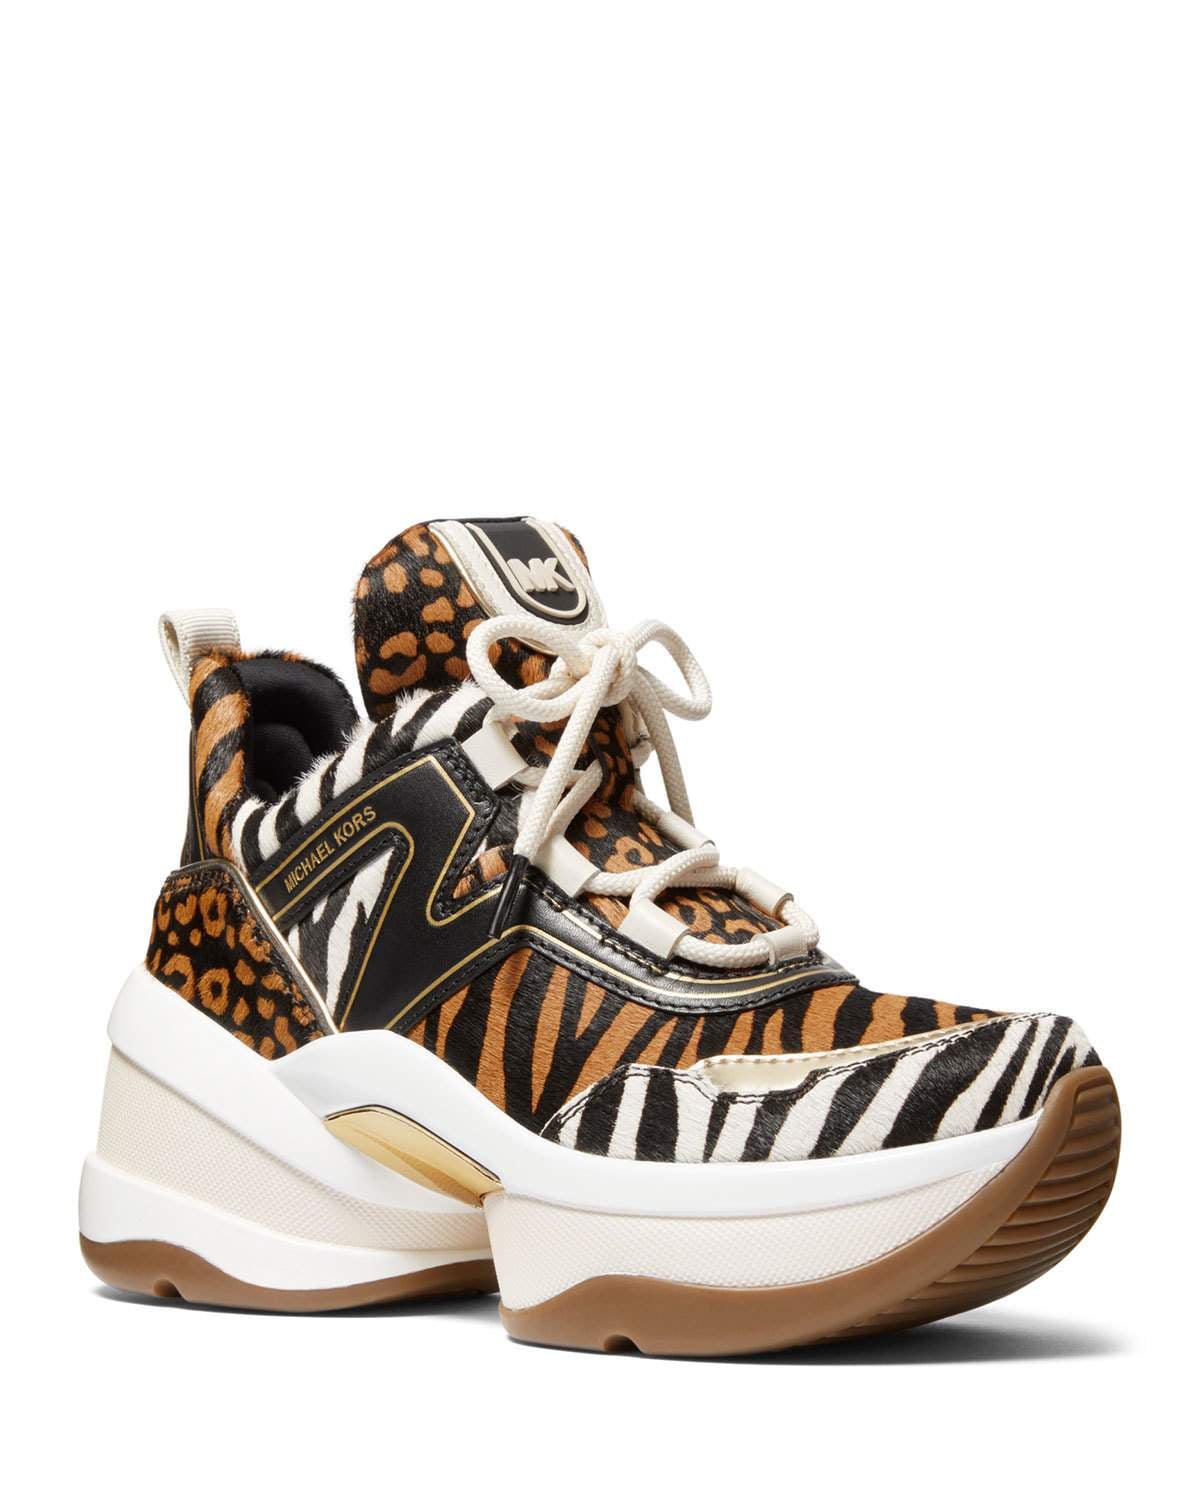 michael kors leopard tennis shoes